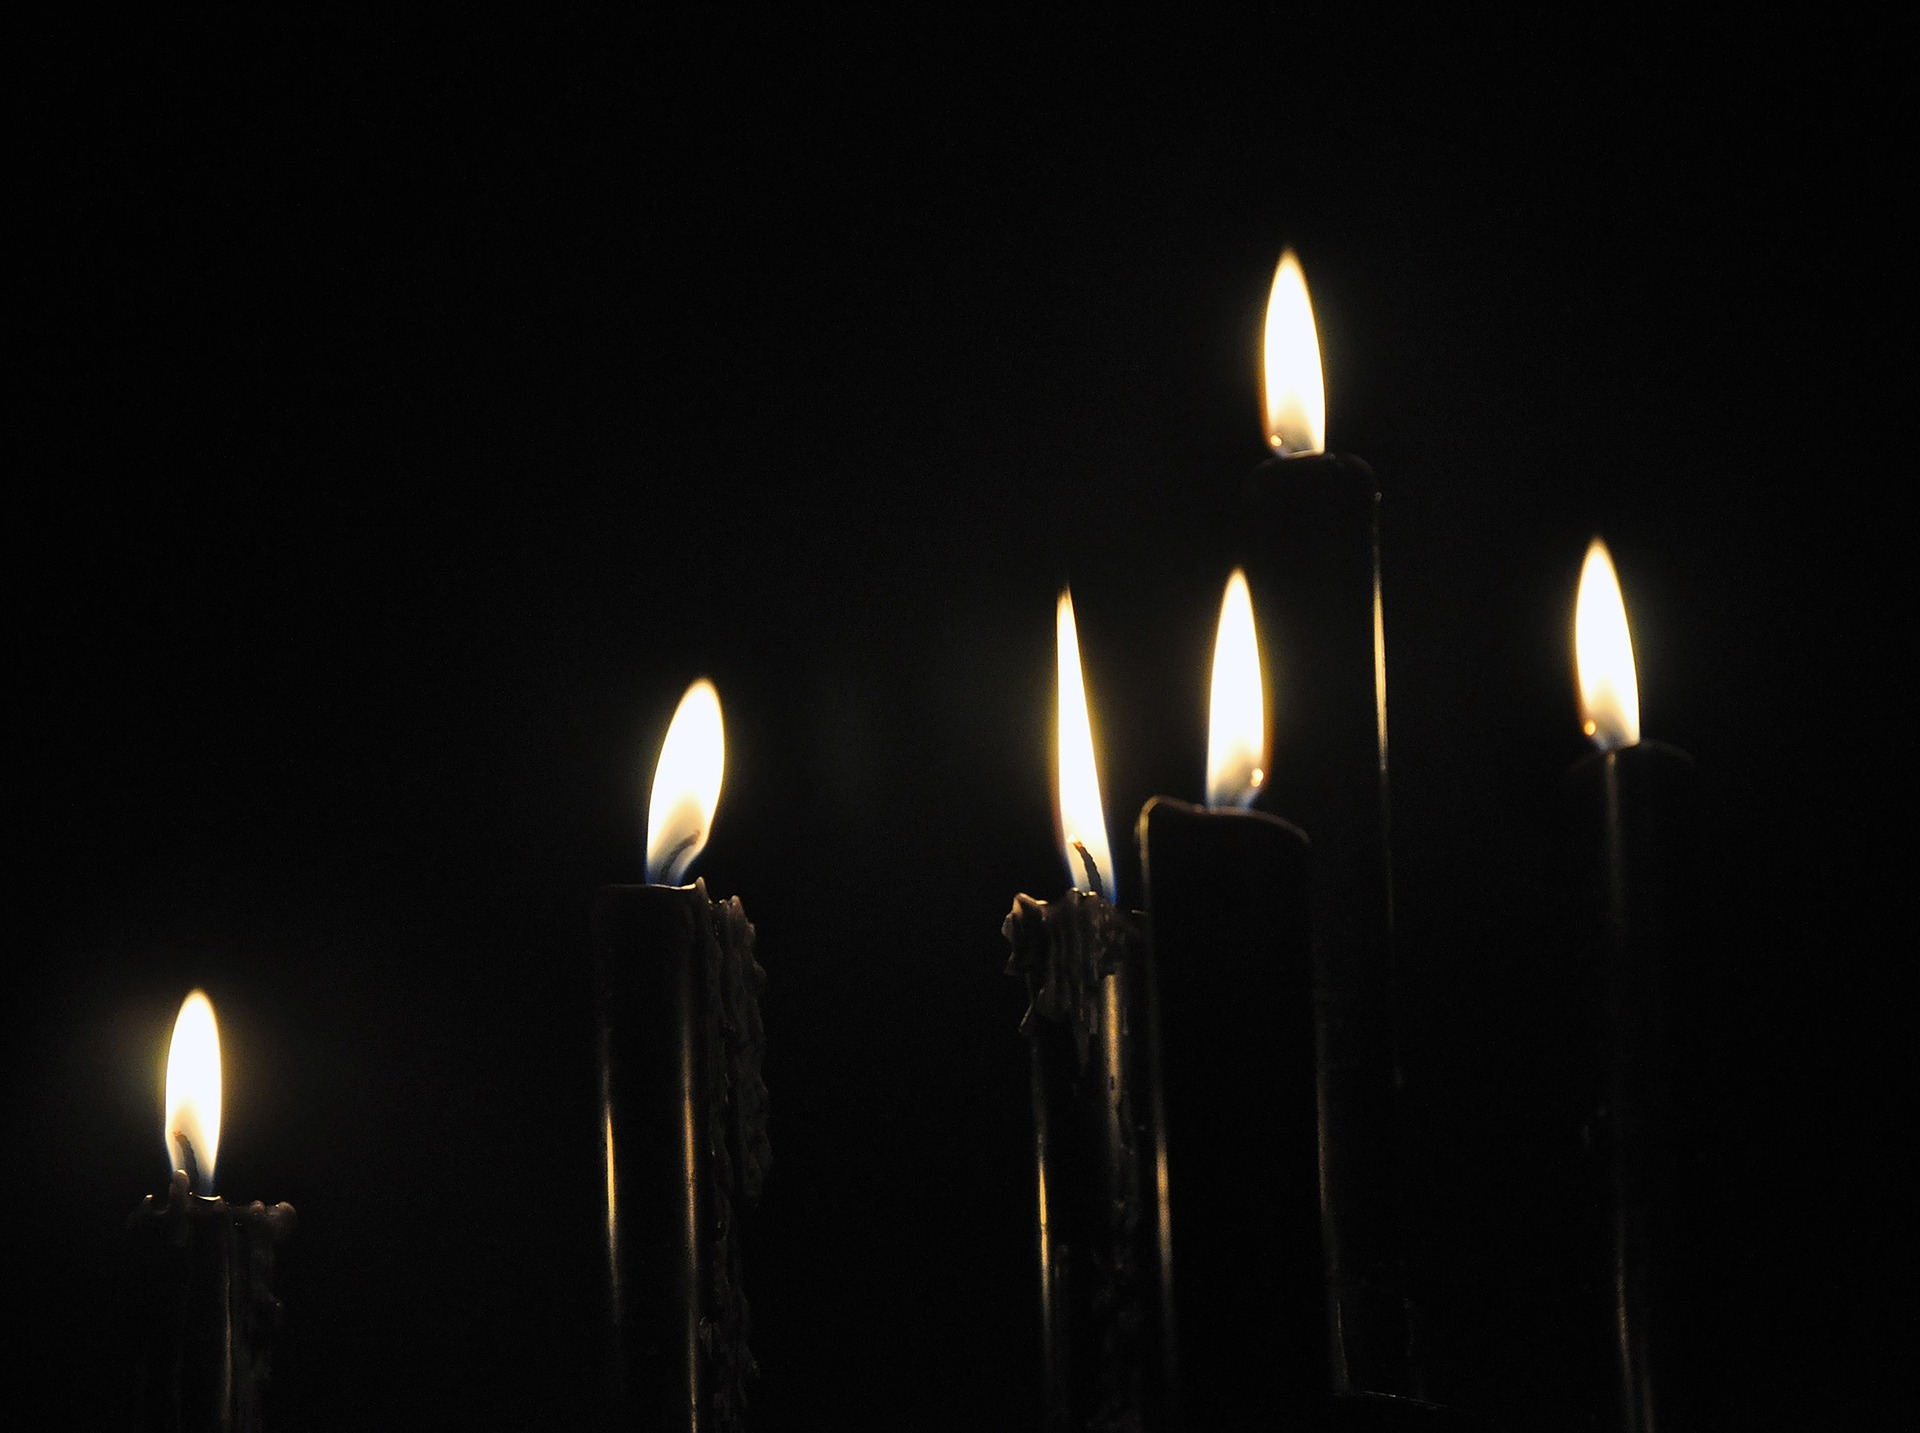 Las velas negras ¿solo se utilizan en rituales malignos? - La Opinión